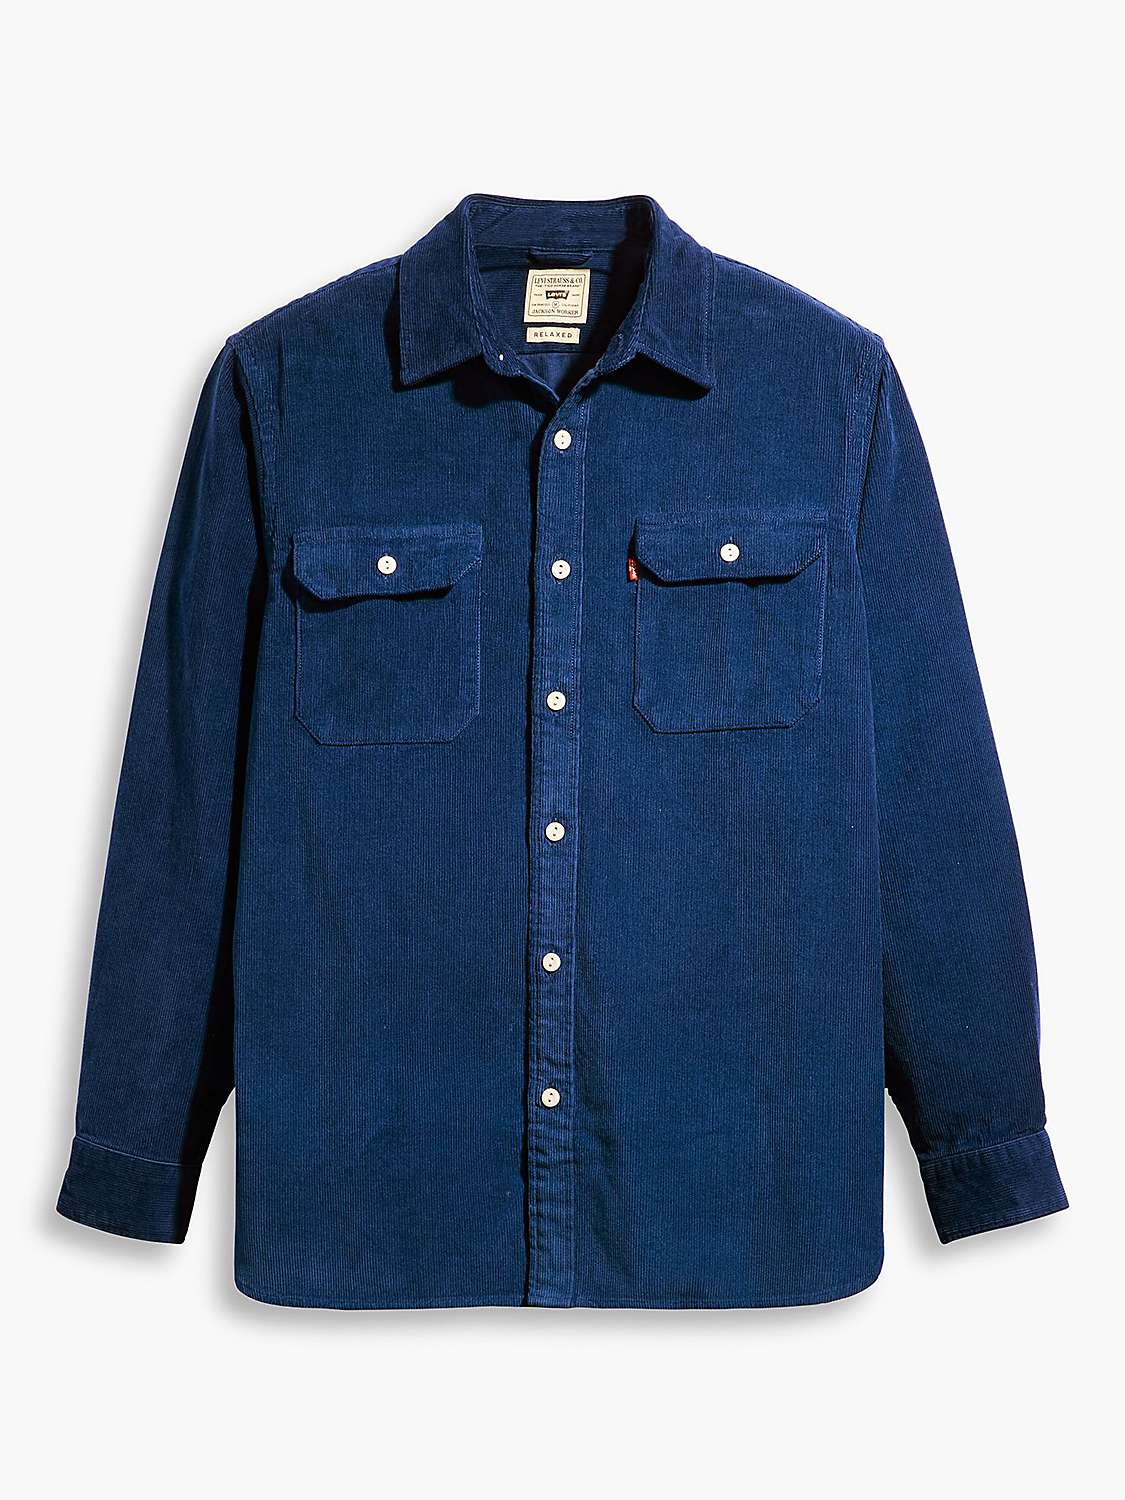 Buy Levi's Jackson Worker Overshirt, Estate Blue Online at johnlewis.com